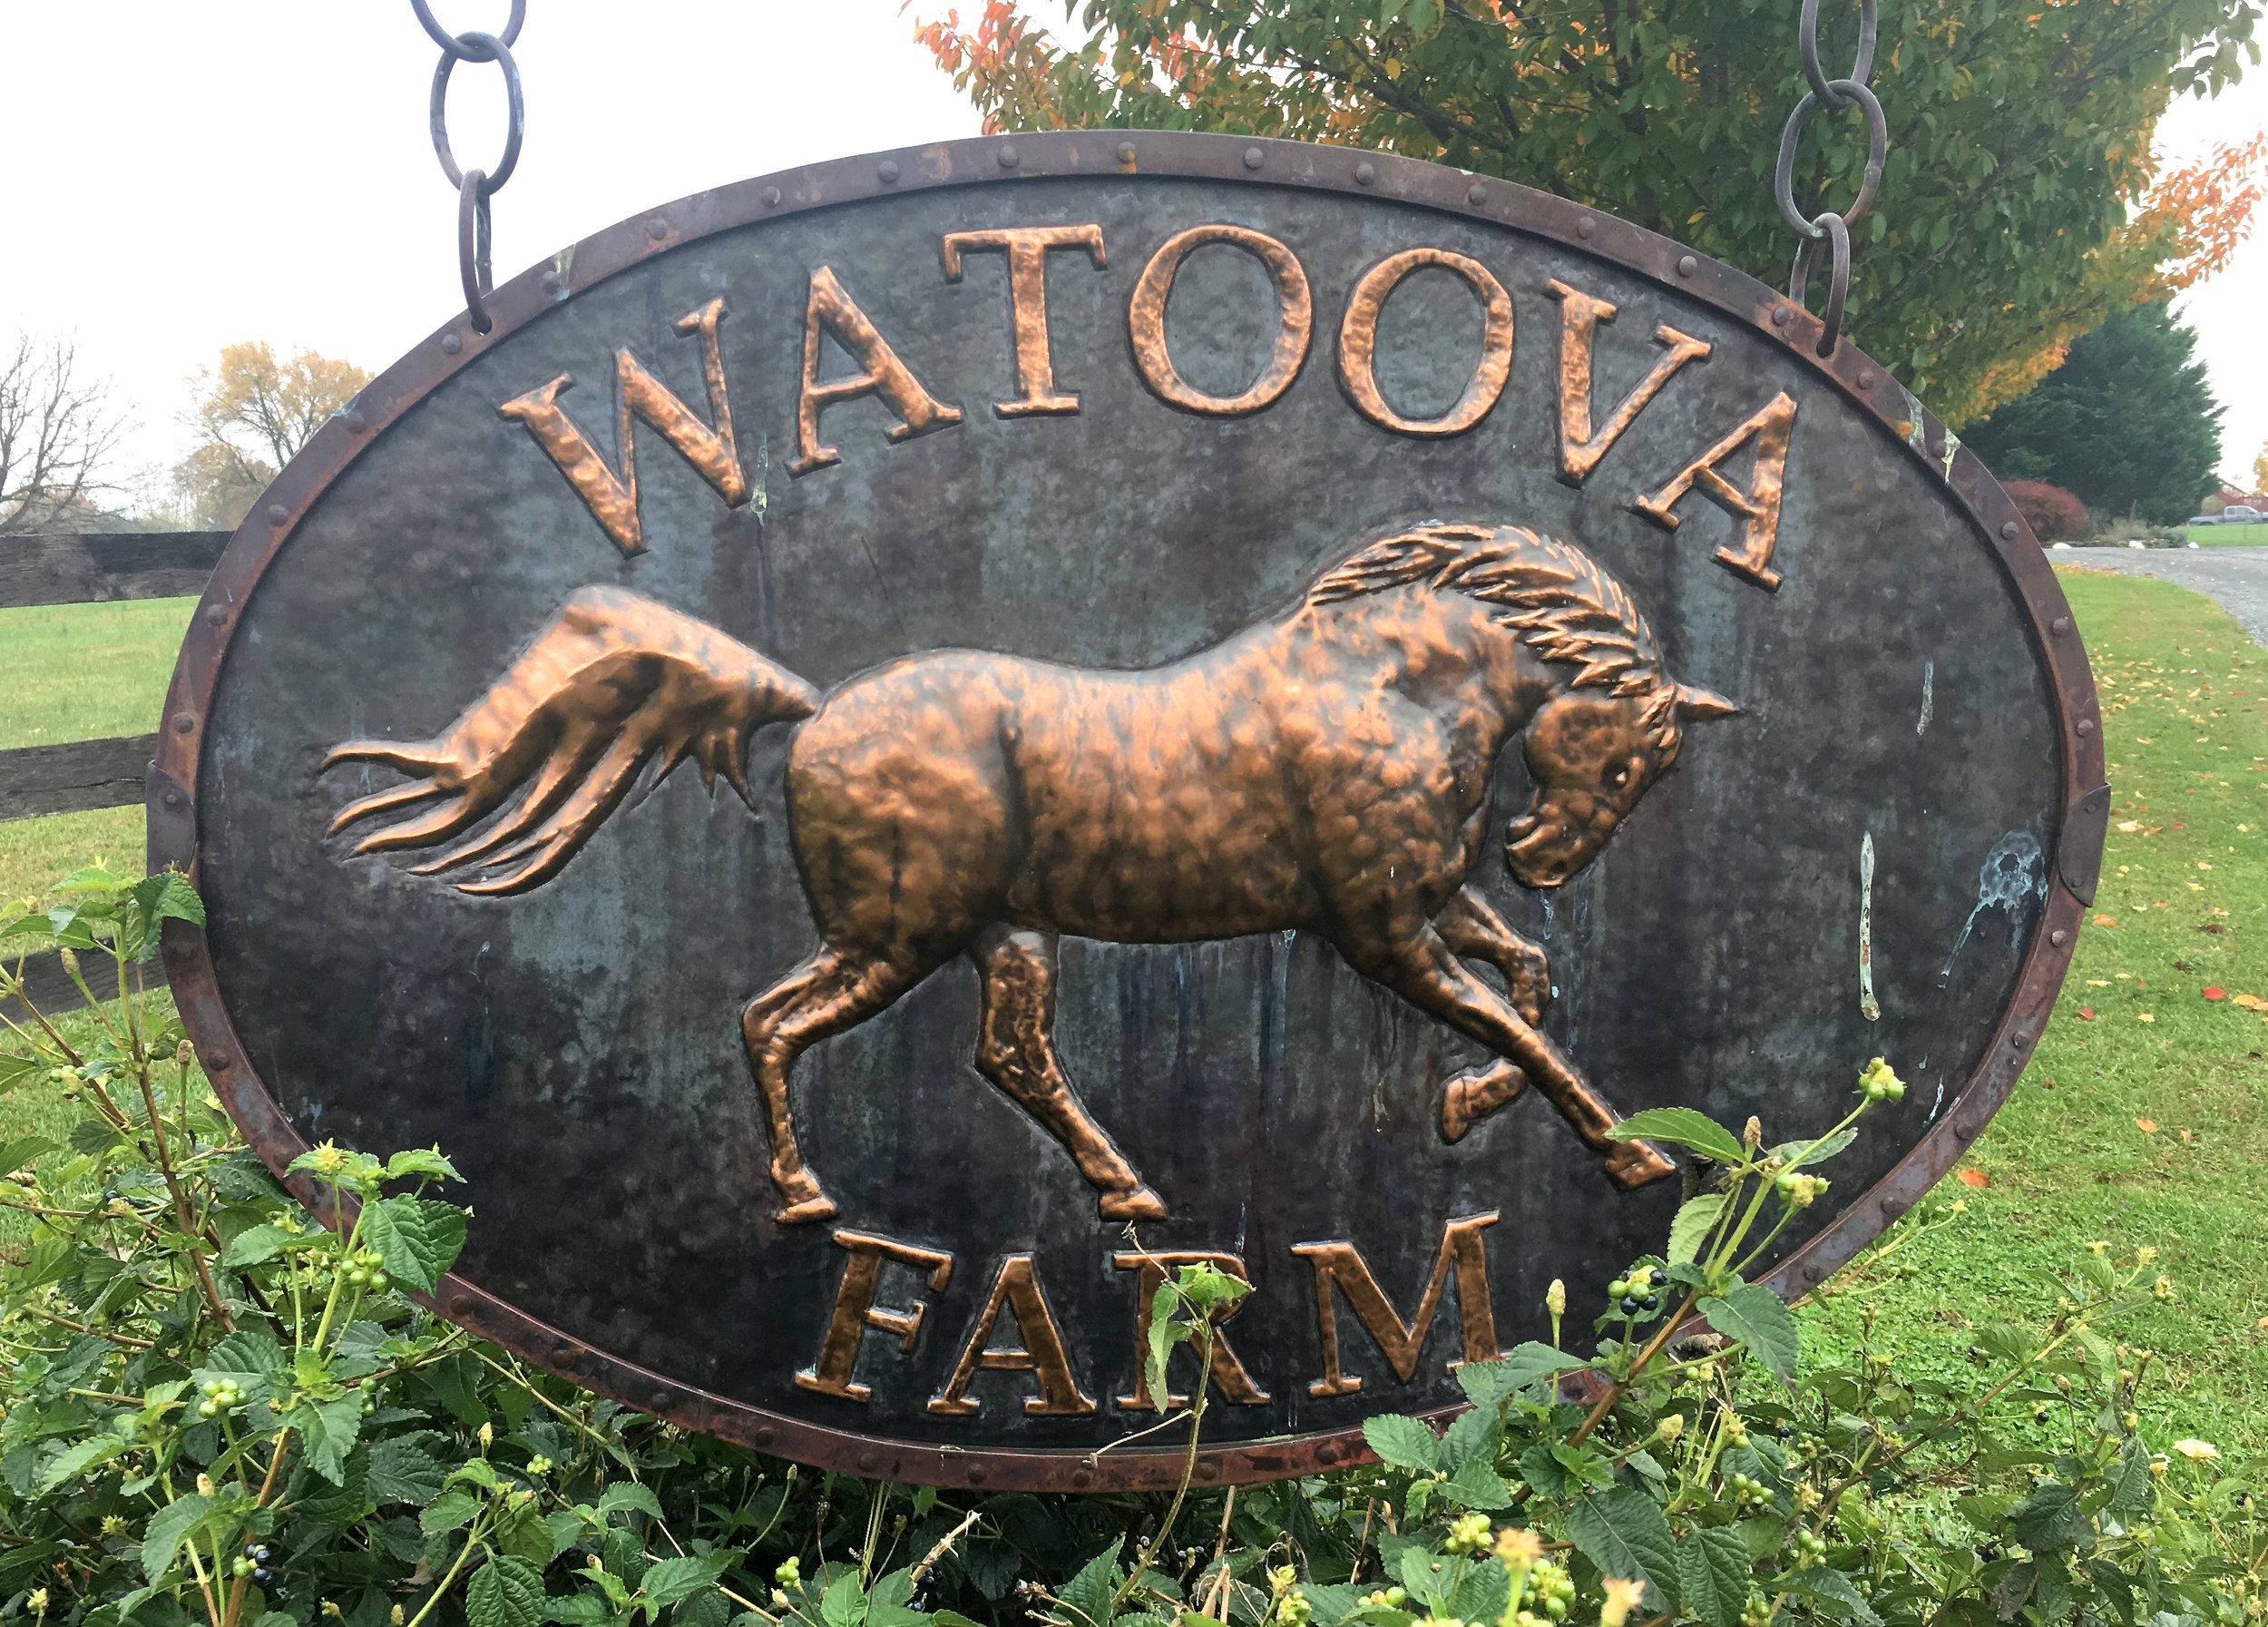 Watoova Farm Sign